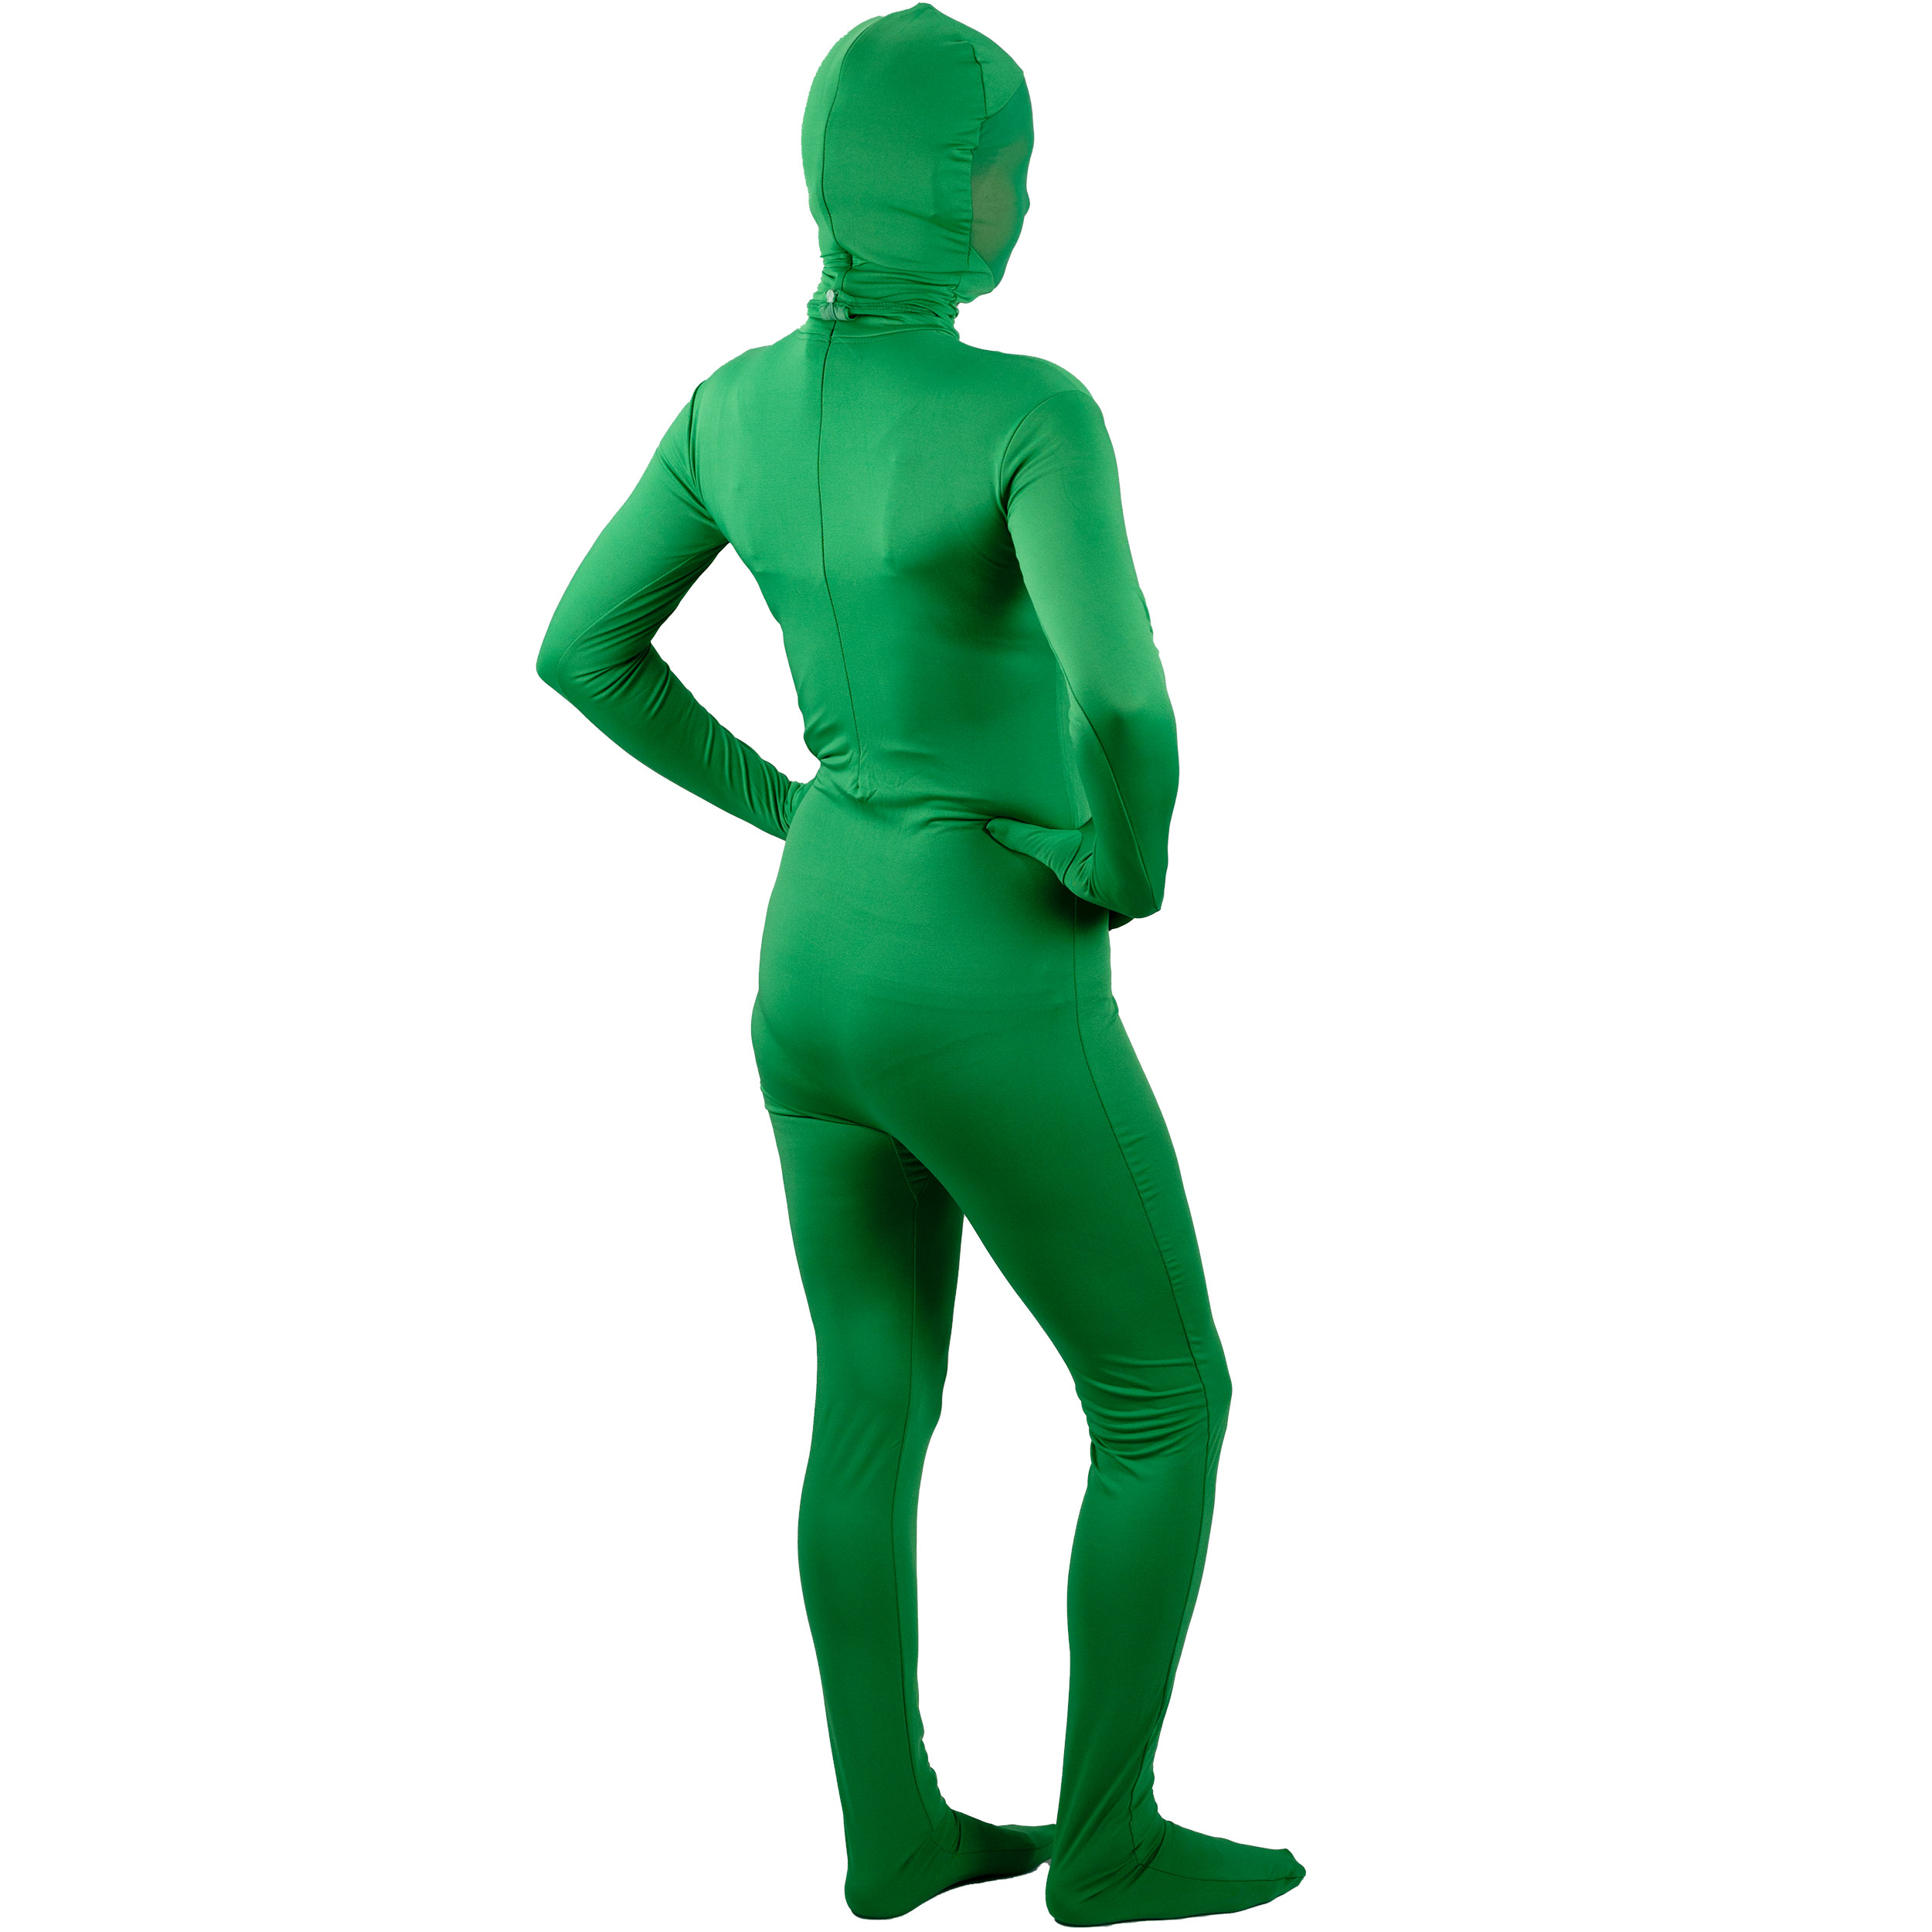 BRESSER BR-C2L zweiteiliger Chromakey grüner Anzug Größe: L